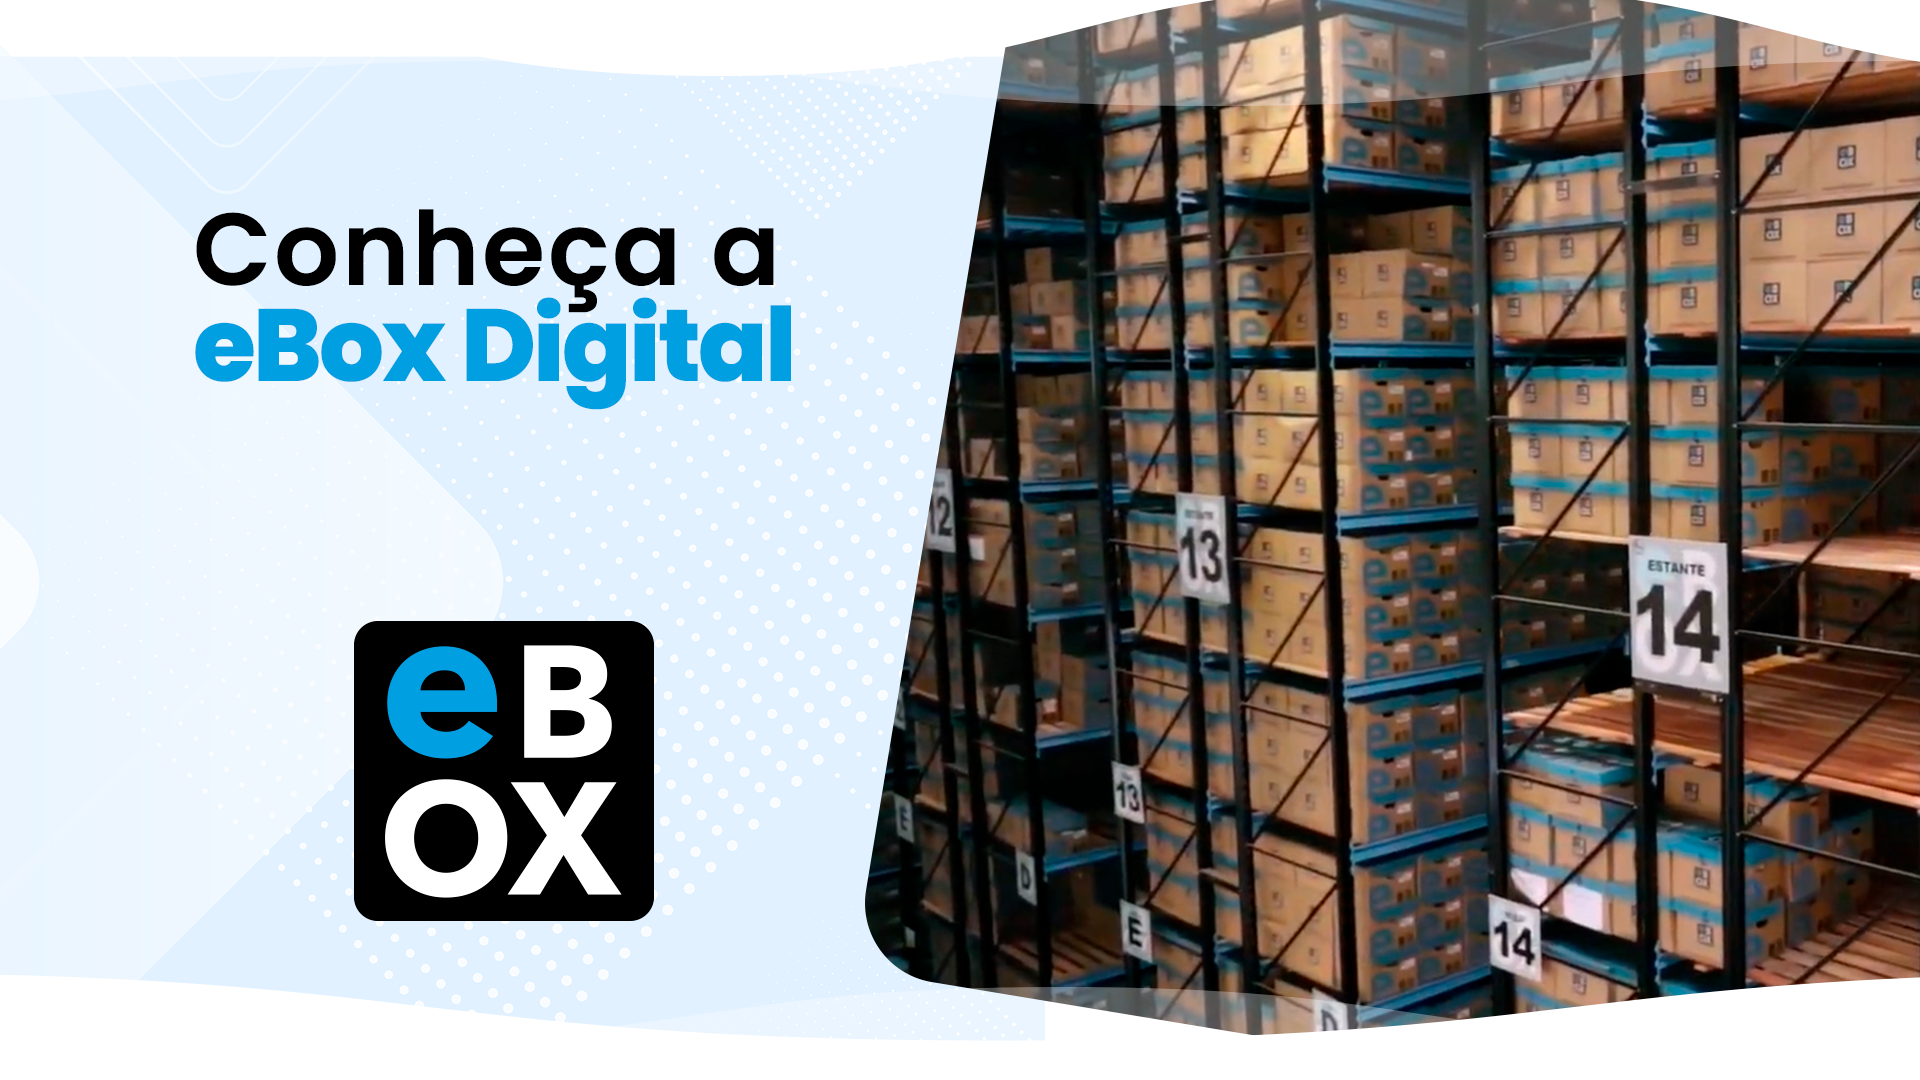 Conheça a eBox Digital - Vídeo Institucional